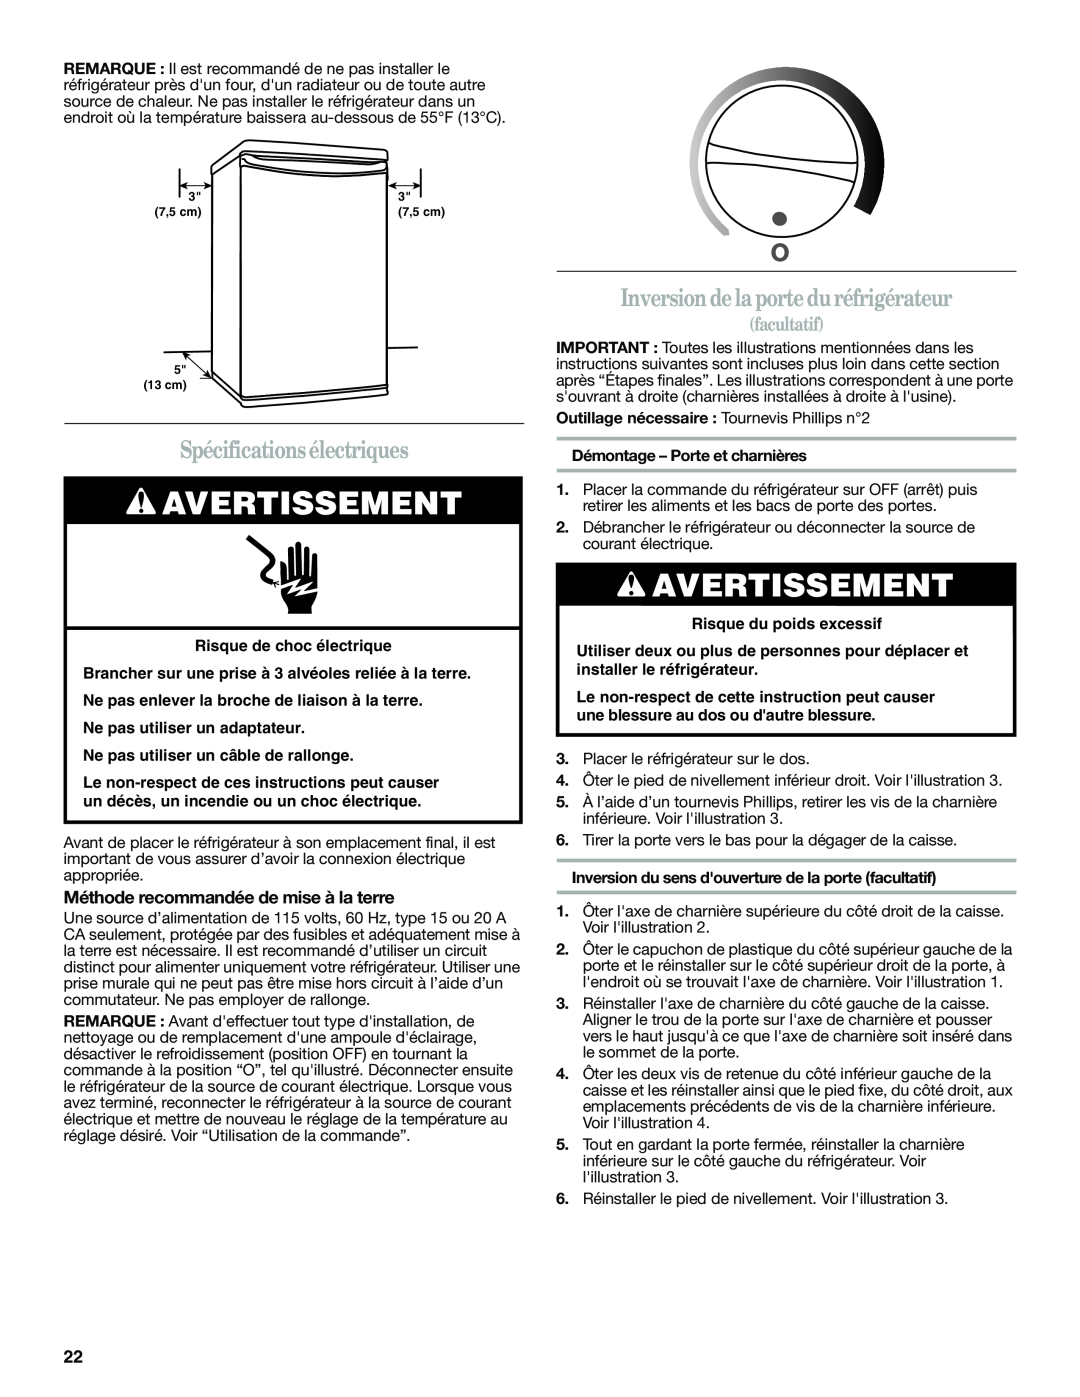 Whirlpool WAR488BSL manual Spécificationsélectriques, Inversion de la porte duréfrigérateur, facultatif, Avertissement 